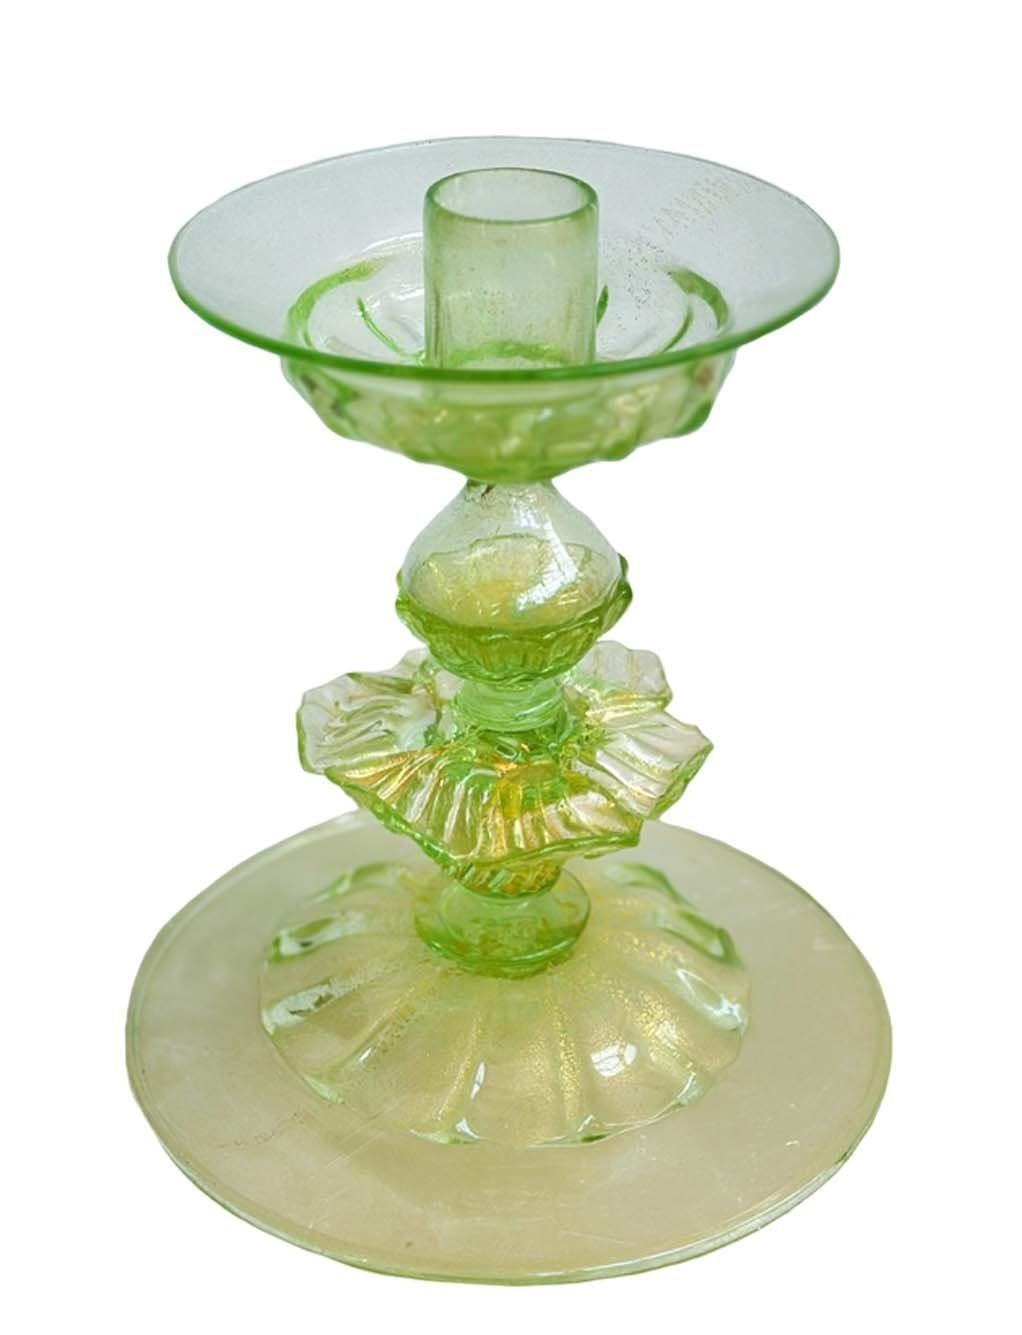 Vier Kerzenhalter aus grünem Murano-Glas mit glänzenden Goldflecken und gerippten Details. Nach dem Vorbild von Salviati. Hergestellt in Italien, ca. 1950er Jahre.
Abmessungen (pro Stück):
6 